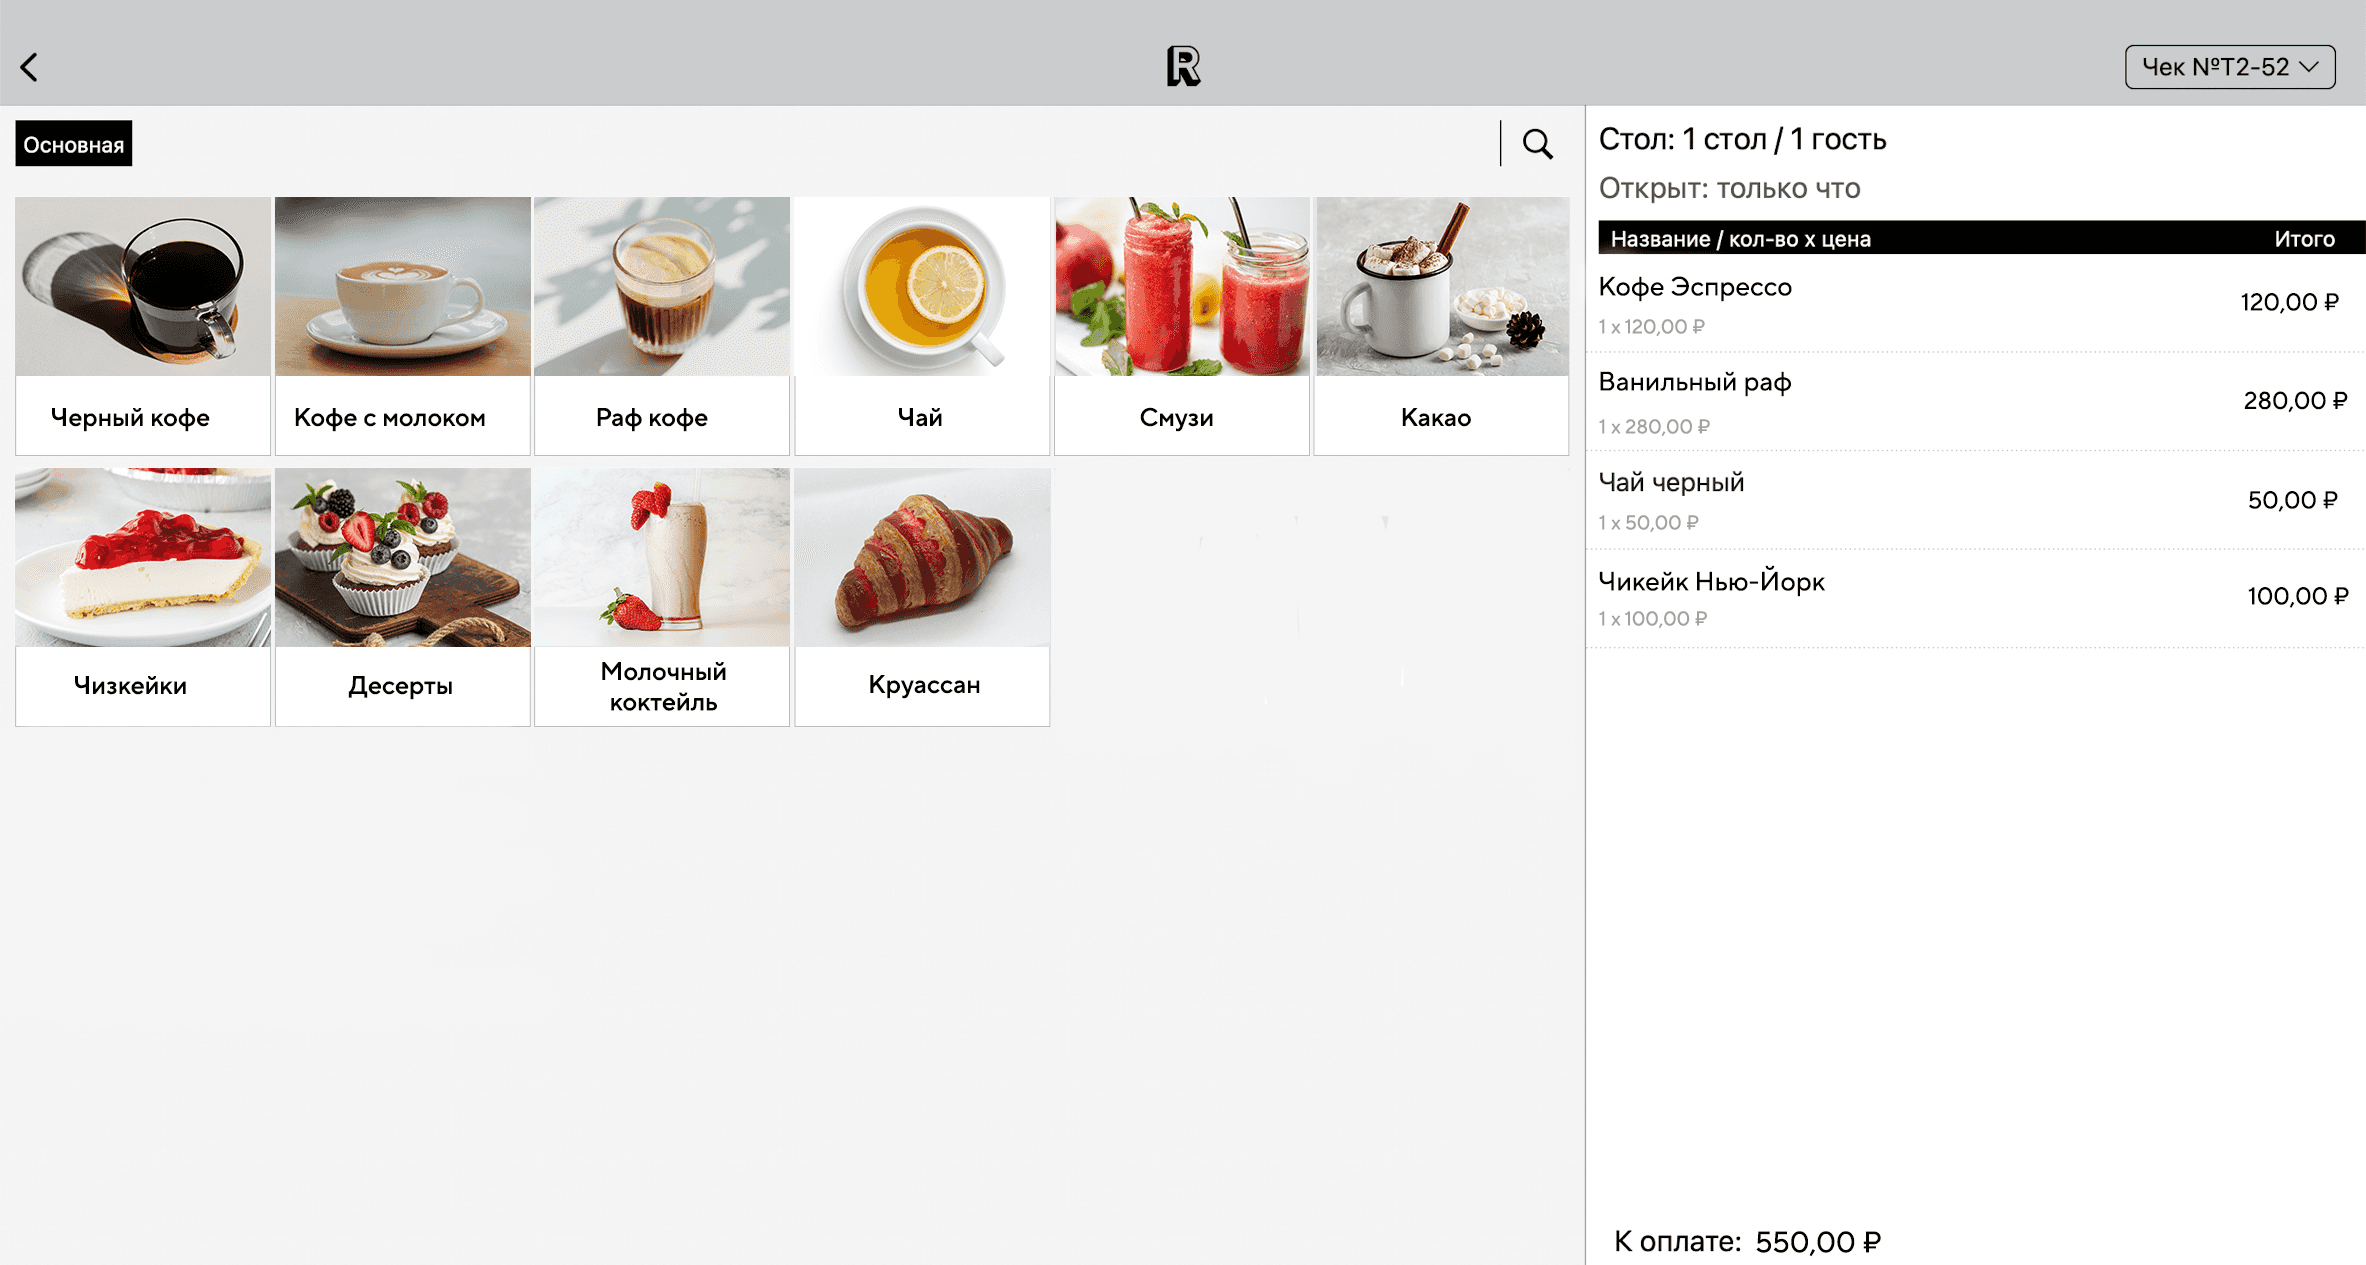 Интерфейс кассовой программы для кафе в системе Restik